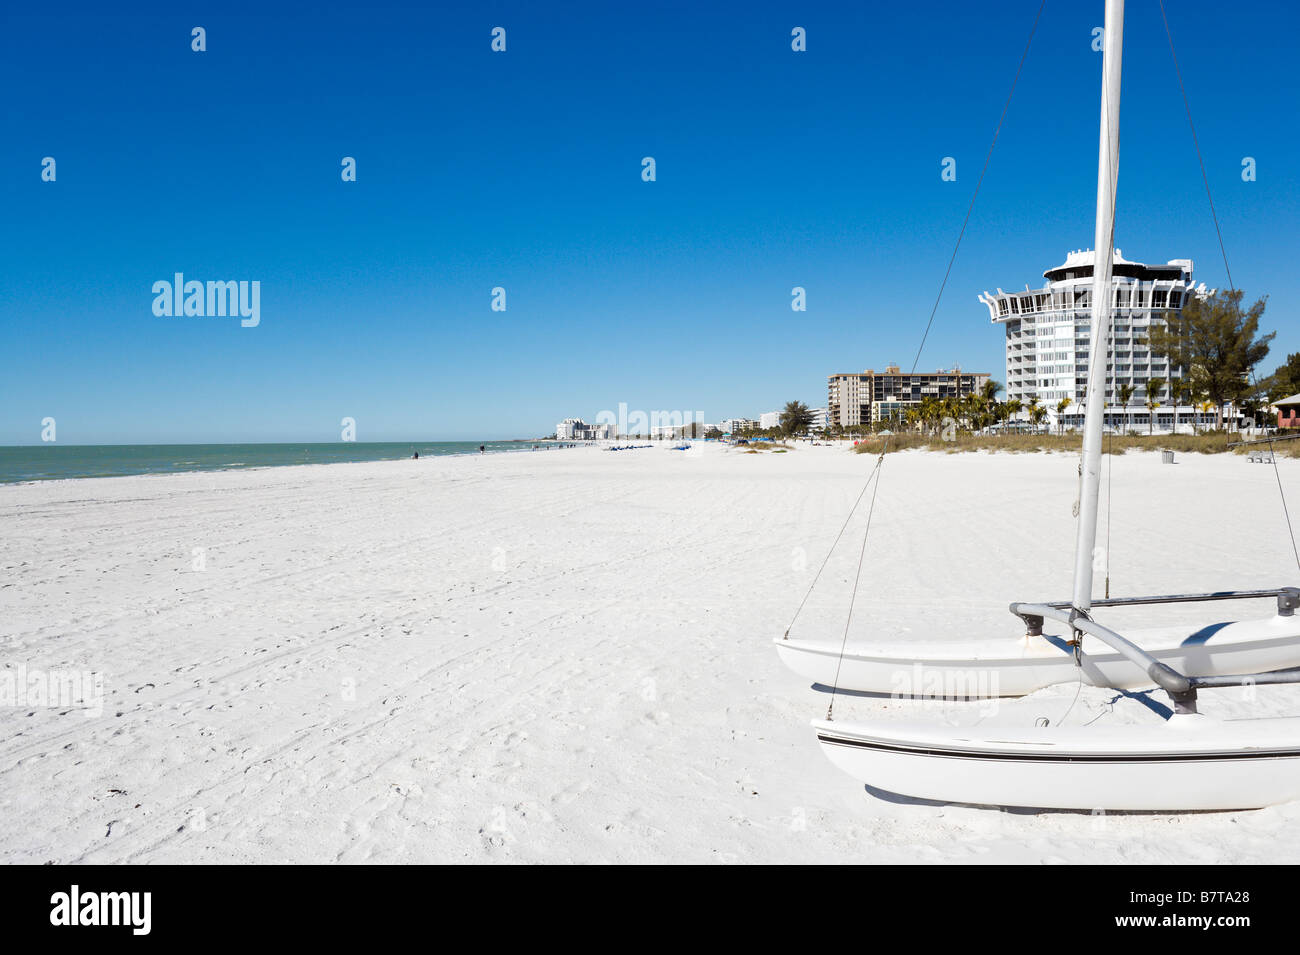 St Pete Beach vicino al Grand Hotel Plaza Beach, costa del Golfo della Florida, Stati Uniti d'America Foto Stock